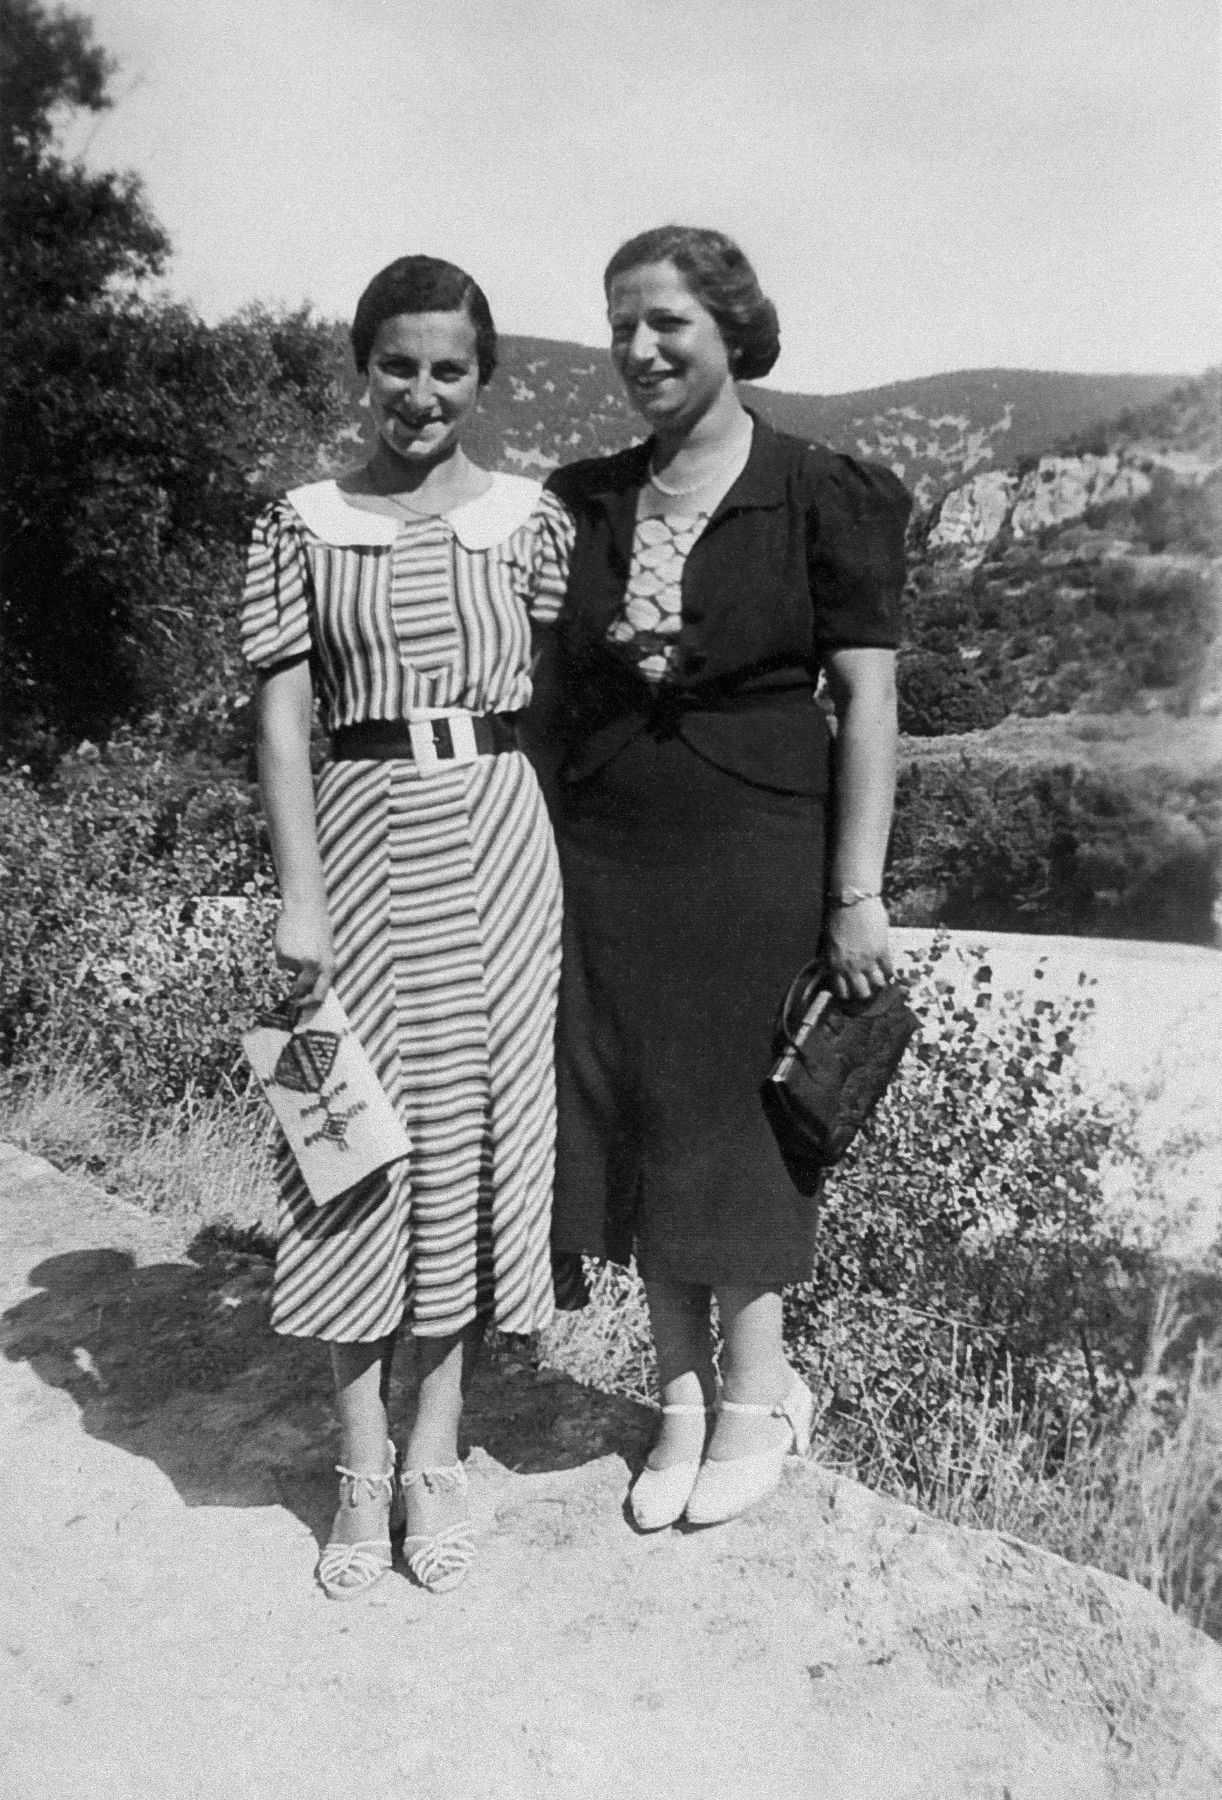 Ann Weiler, réfugiée sarroise, et une amie à Nyons, 1938. ADD, 1 Num 1315, collection Uhl